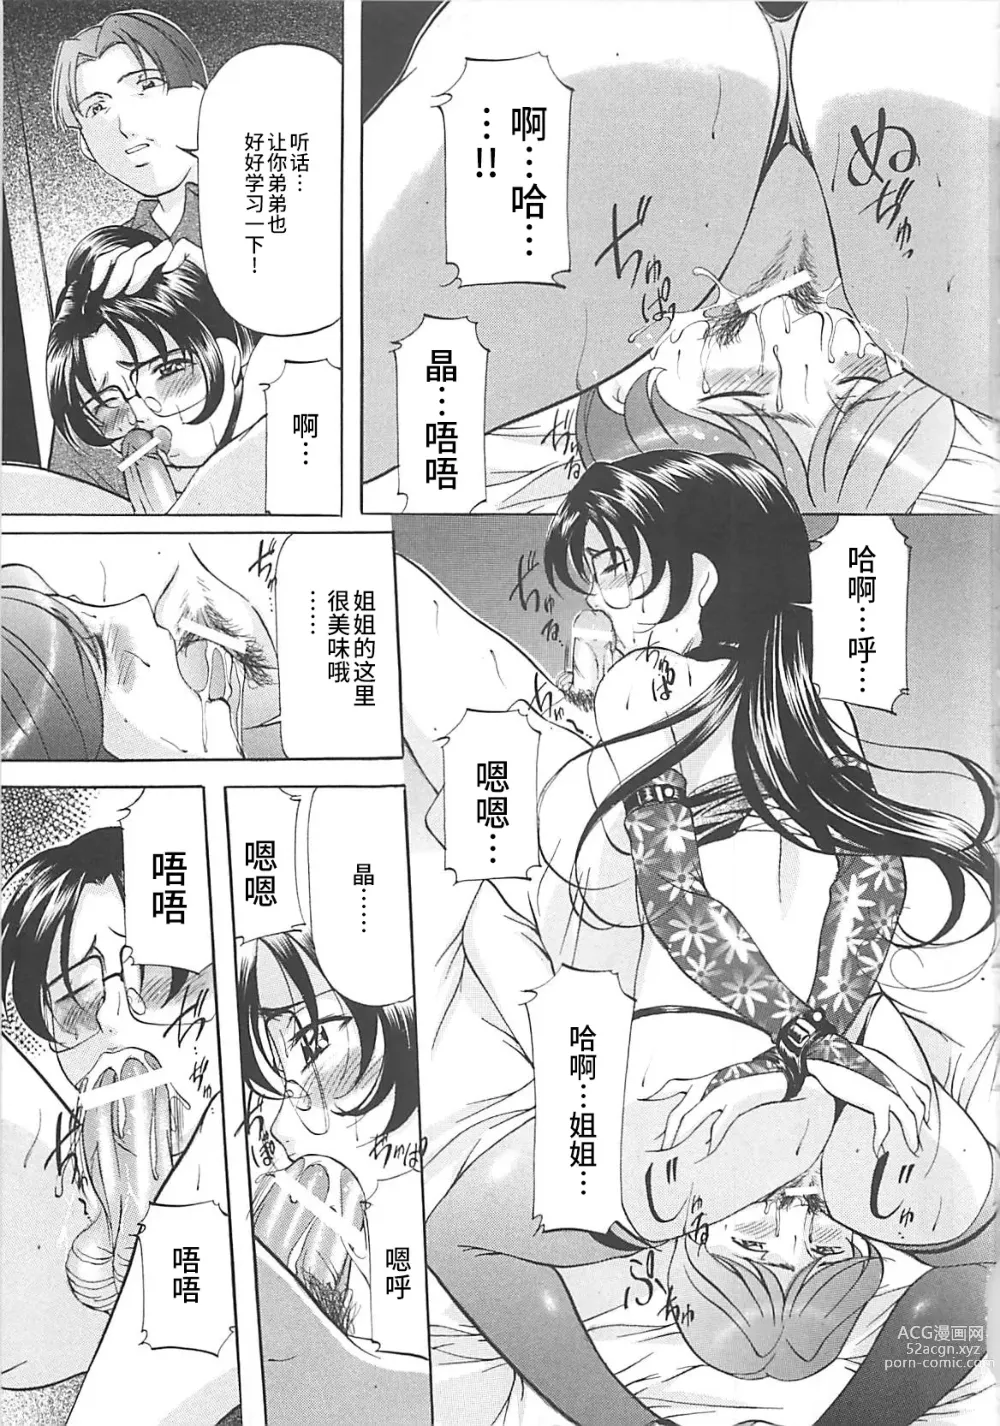 Page 158 of manga SM Koiuta